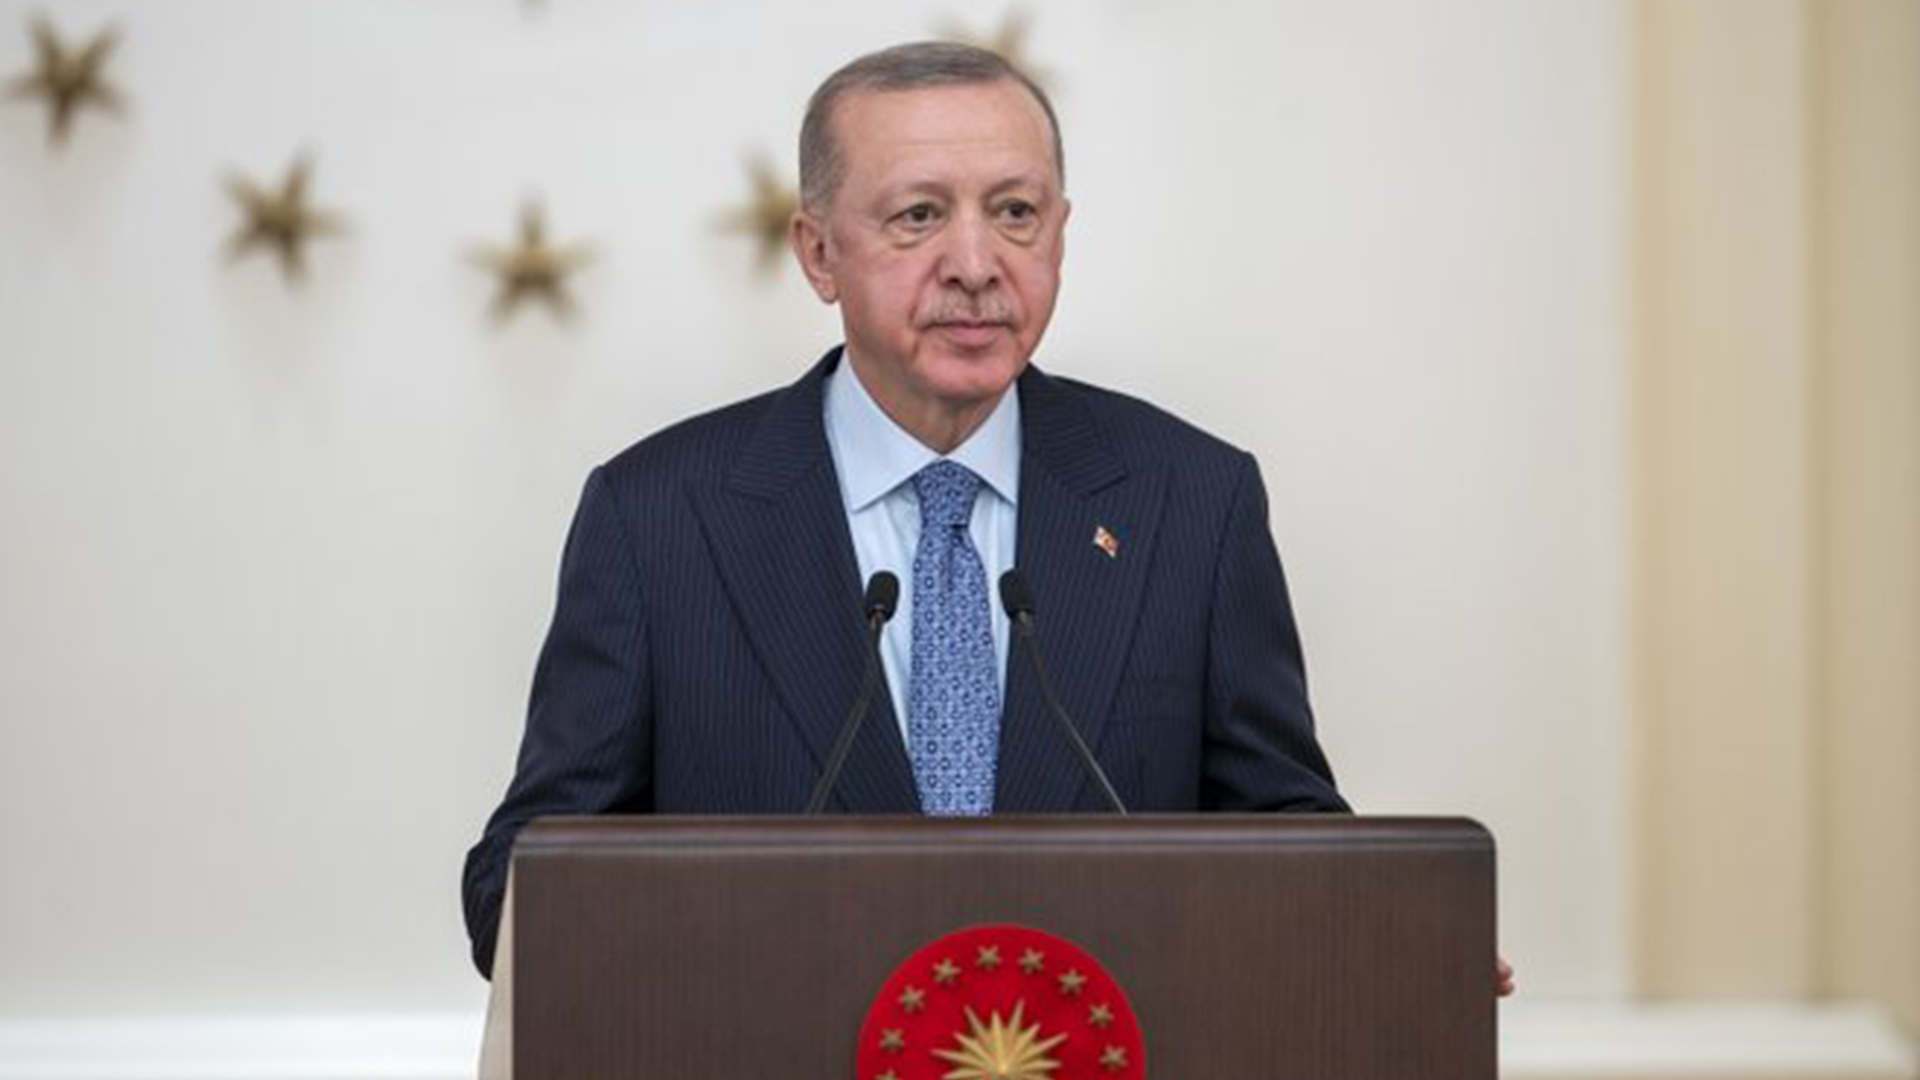 Erdoğan, görüşme öncesi Rusya ve Ukrayna heyetlerine seslendi